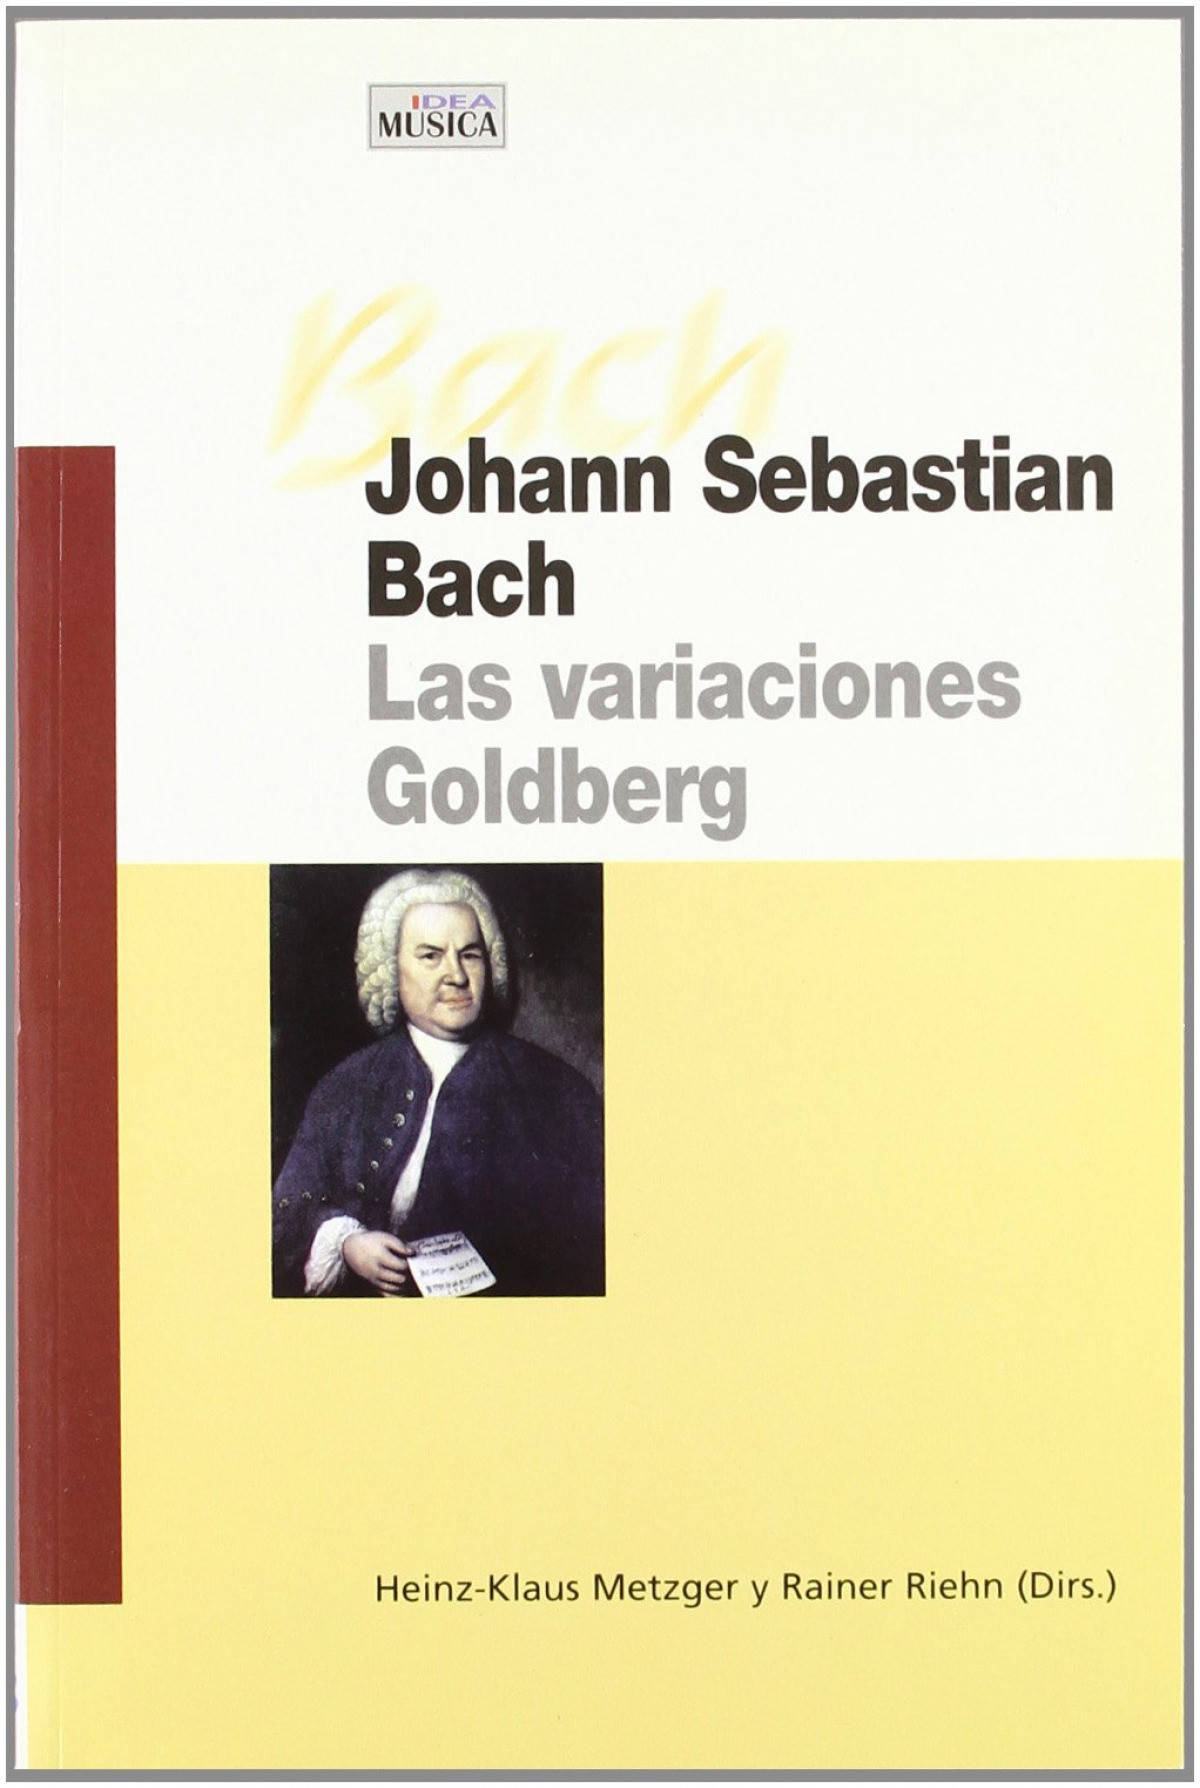 JOHANN SEBASTIAN BACH. LAS VARIACIONES GOLDBERG las variaciones de Gol - Heinz-Klaus Metzger yRainer Riehn (Dirs.)